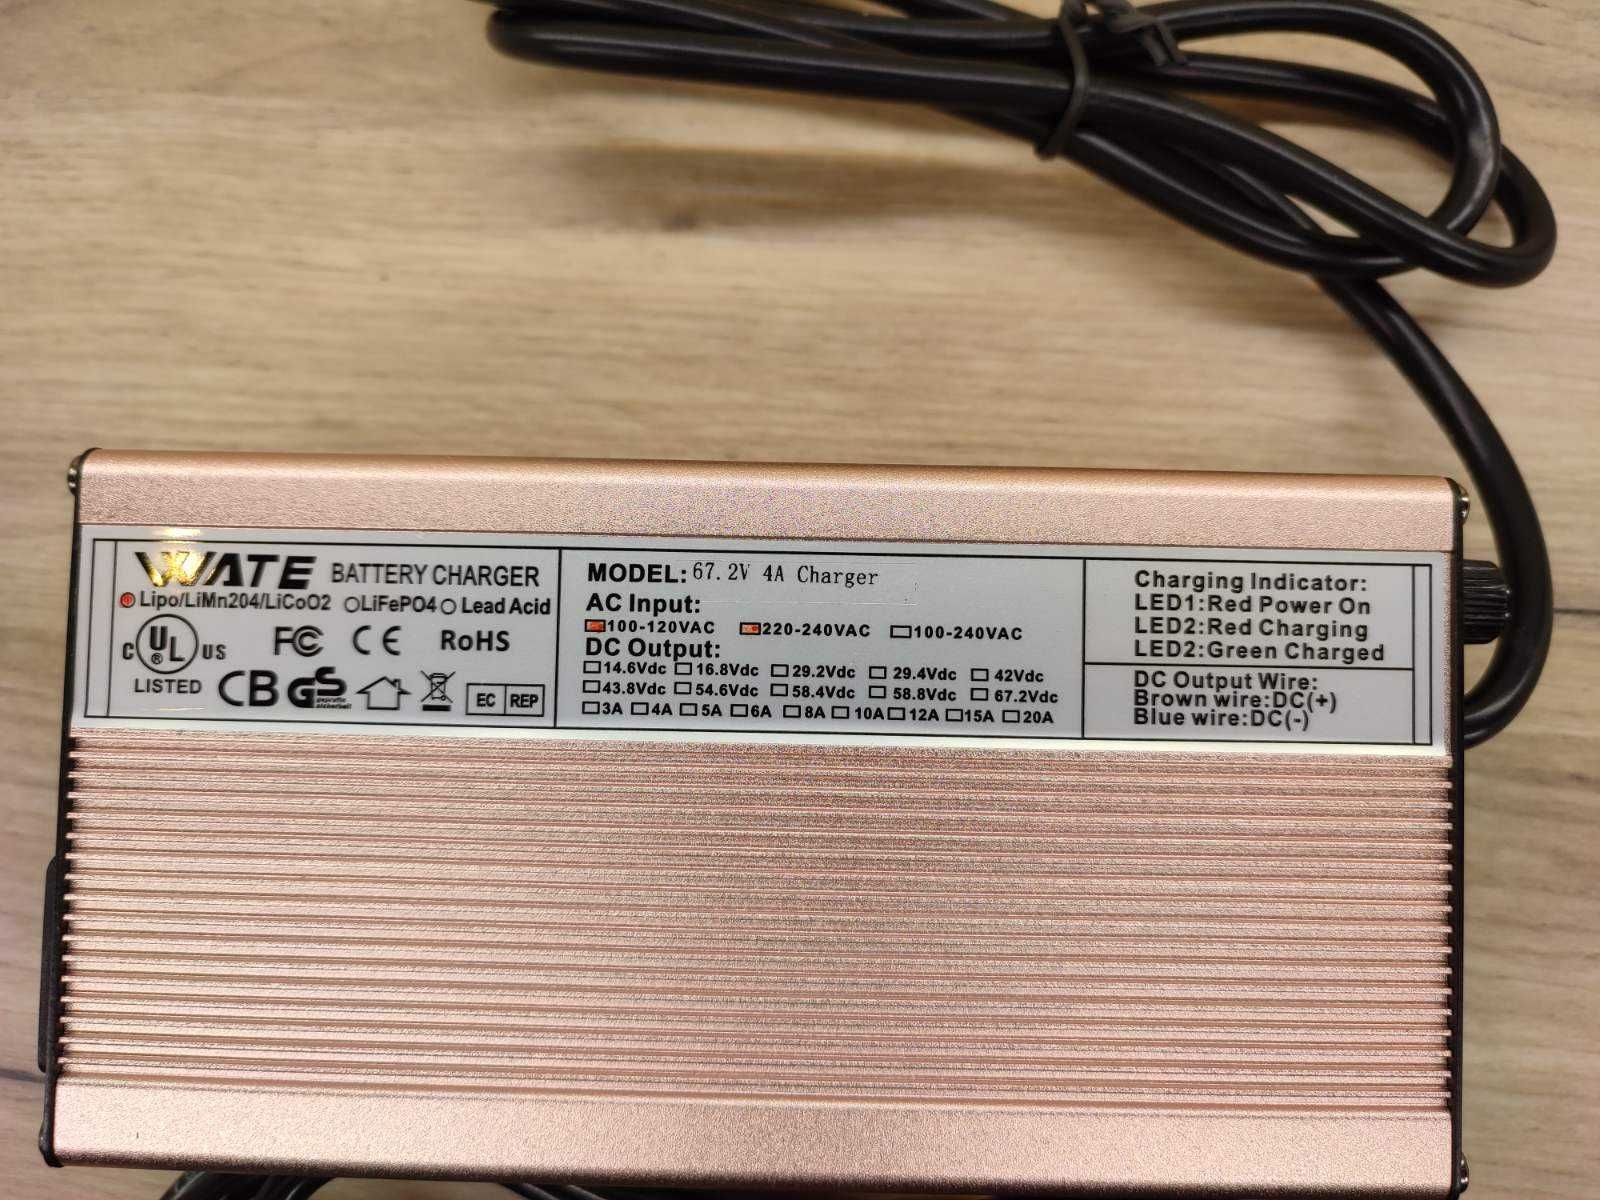 Зарядное устройство Wate для Li-Ion аккумулятора 60 вольт (67,2В) 4А